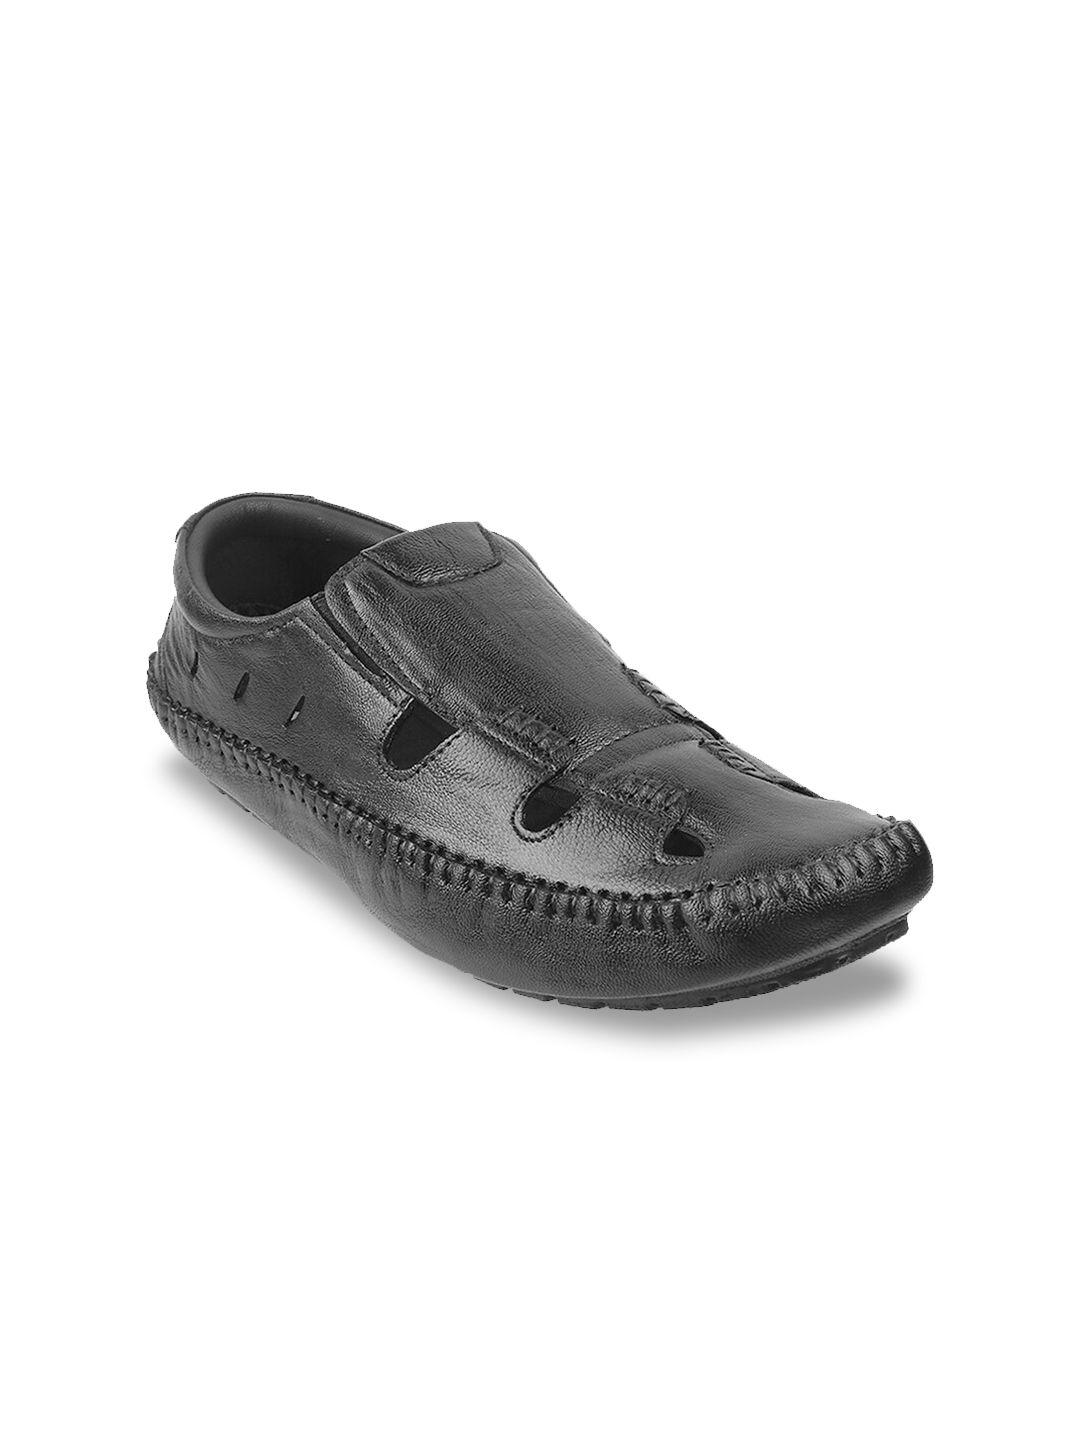 mochi men black leather shoe-style sandals